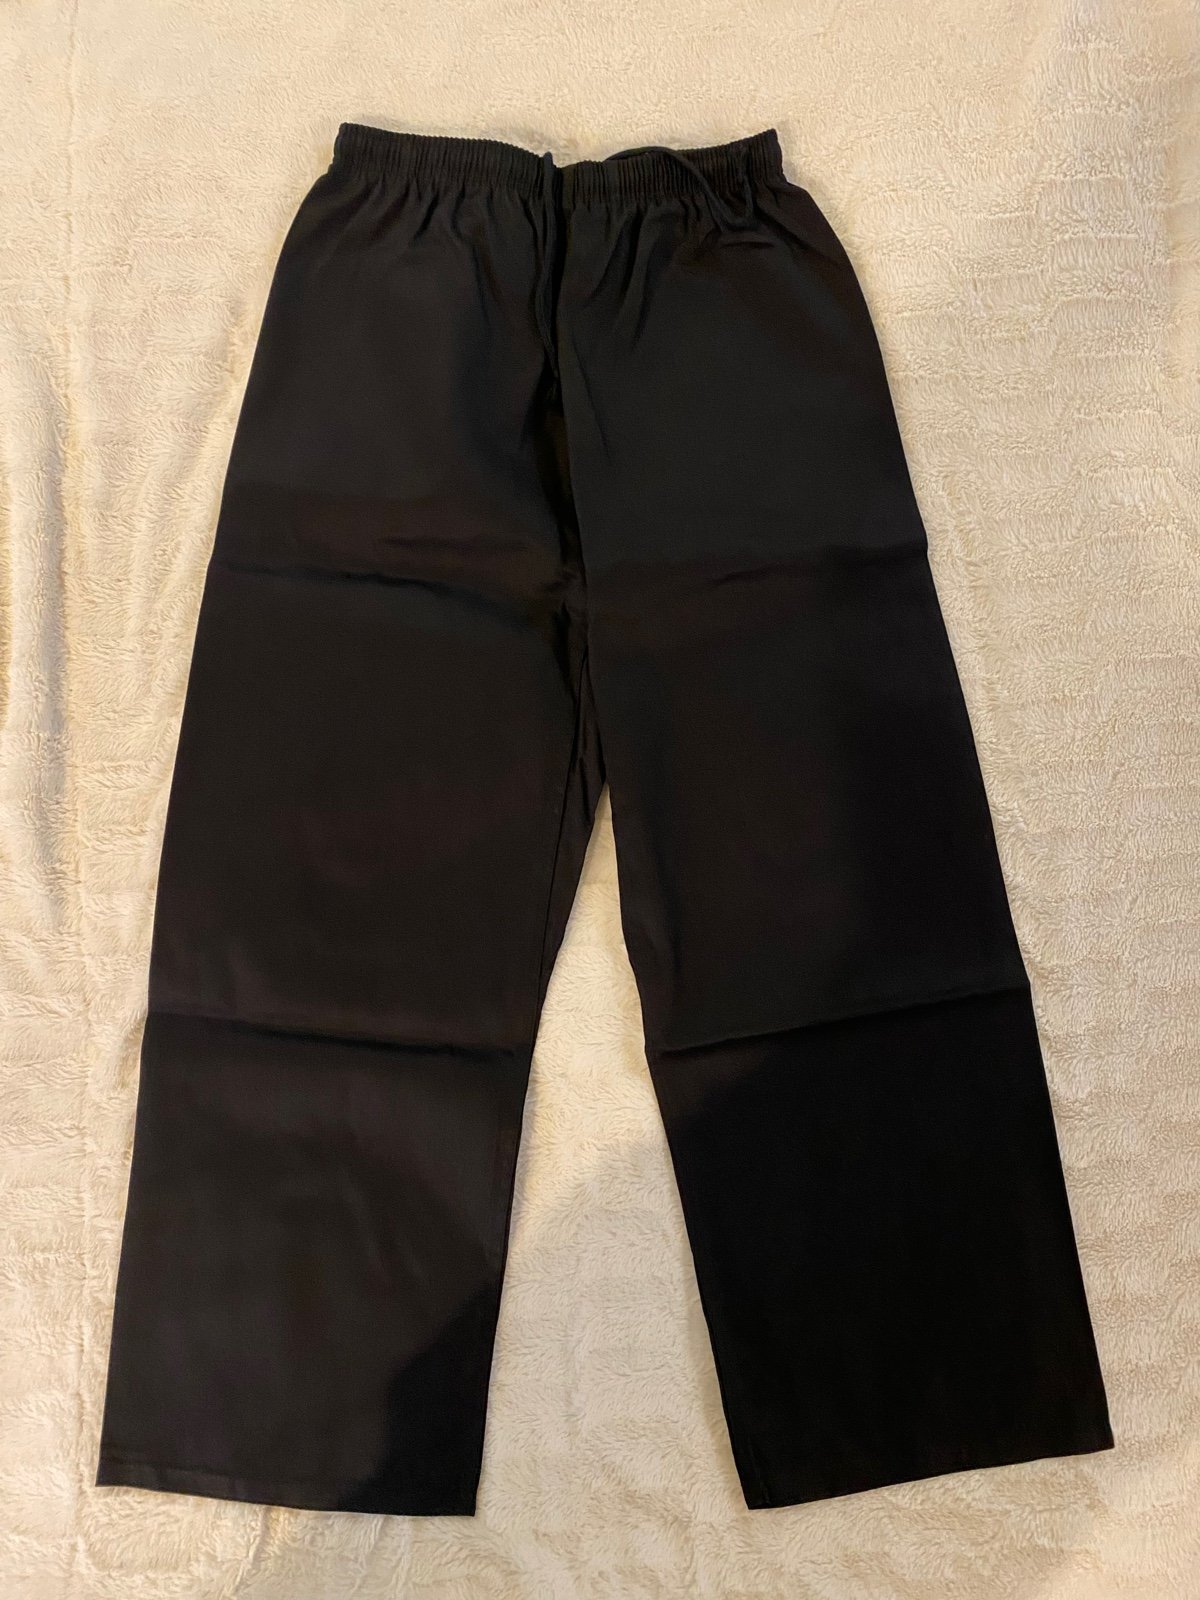 Century Martial Arts Uniform Pants, Size: 4 c187eNsIQ